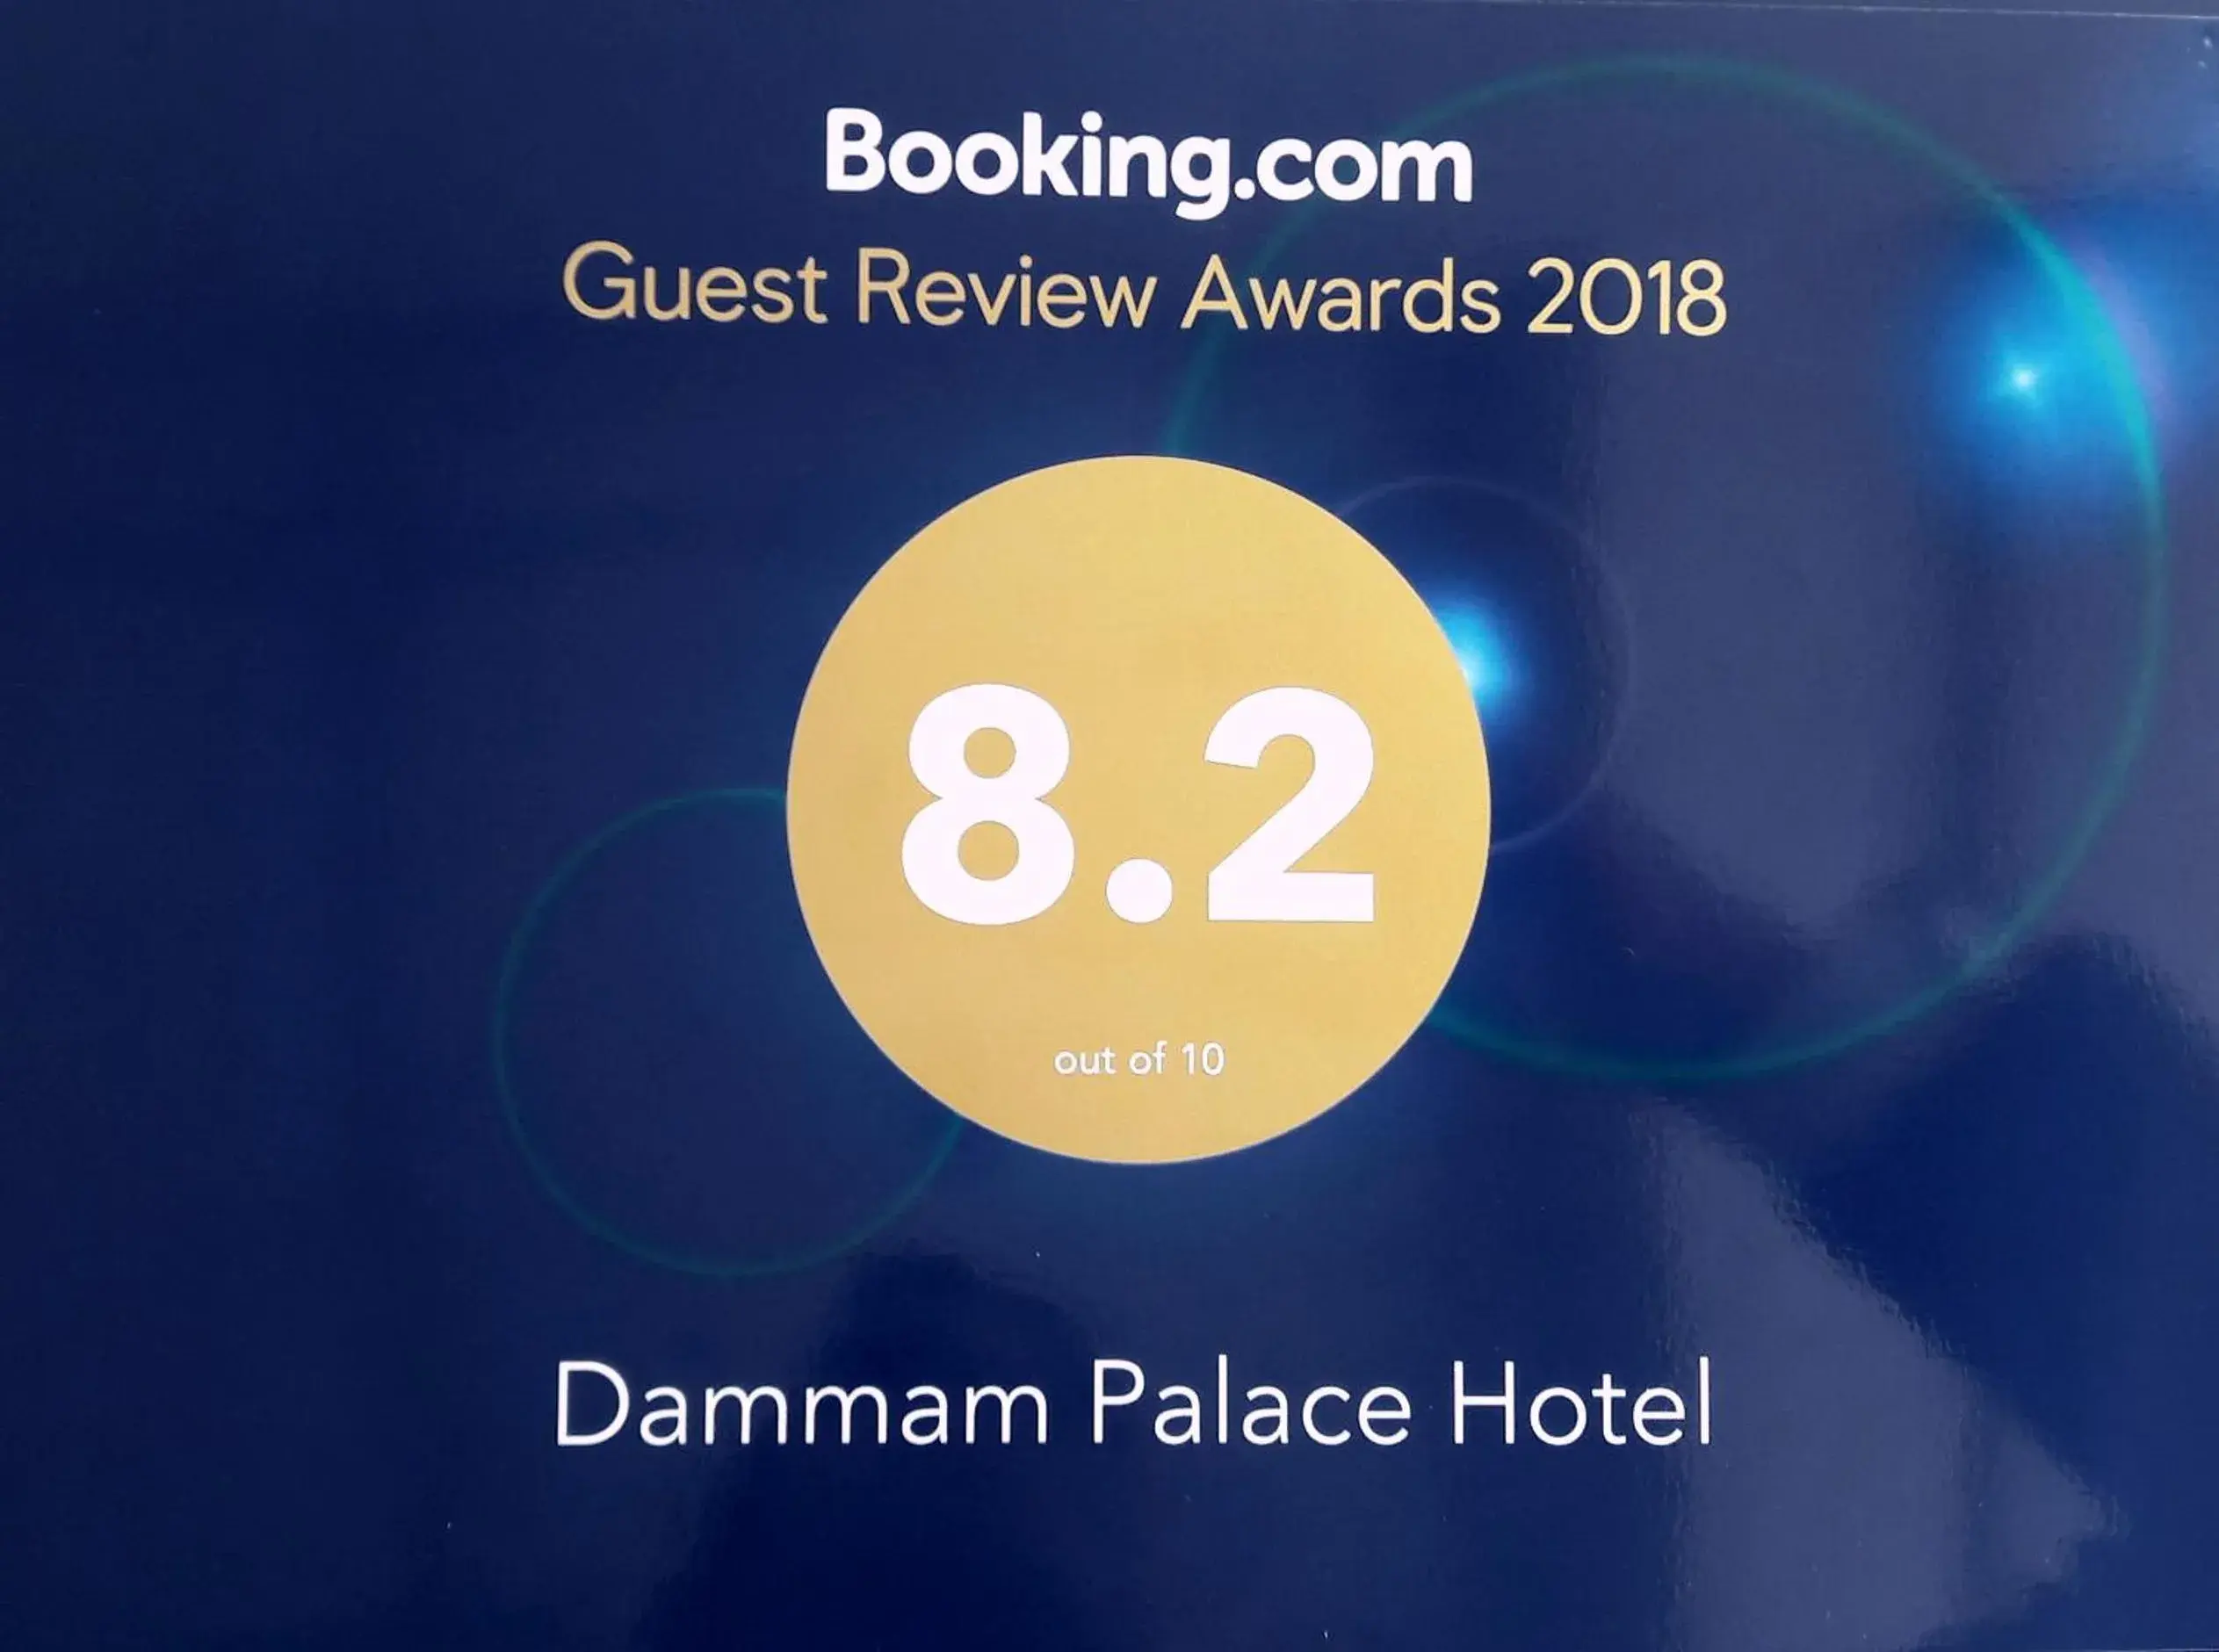 Certificate/Award in Dammam Palace Hotel